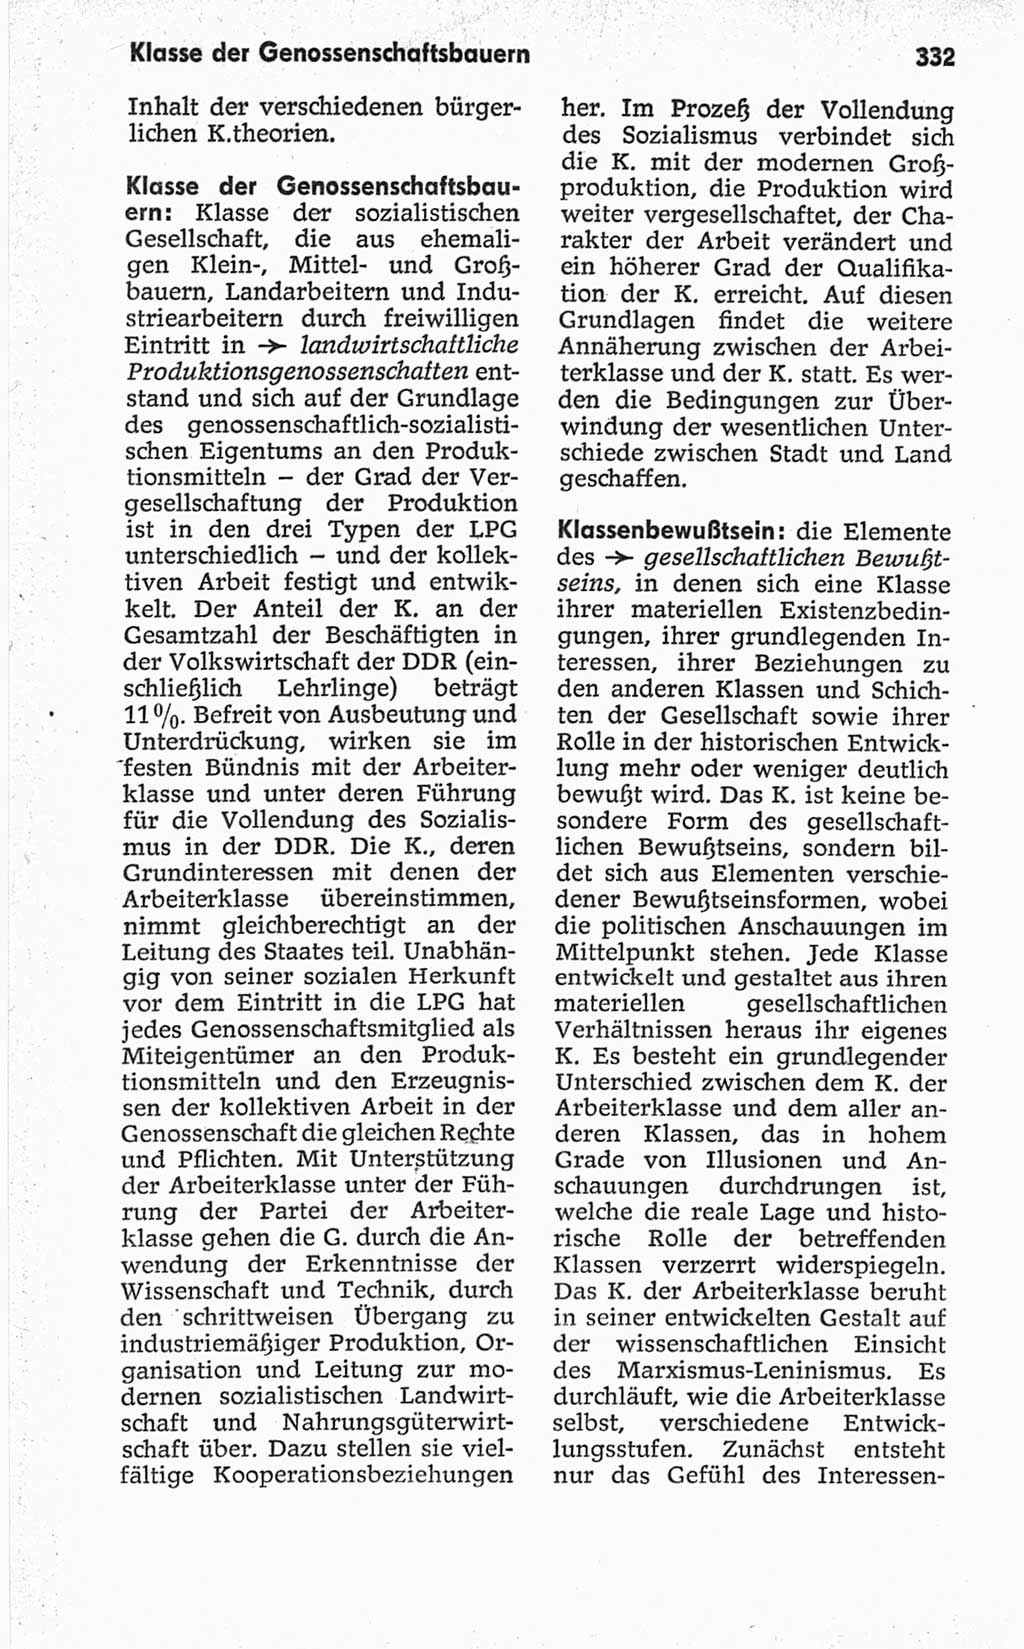 Kleines politisches Wörterbuch [Deutsche Demokratische Republik (DDR)] 1967, Seite 332 (Kl. pol. Wb. DDR 1967, S. 332)